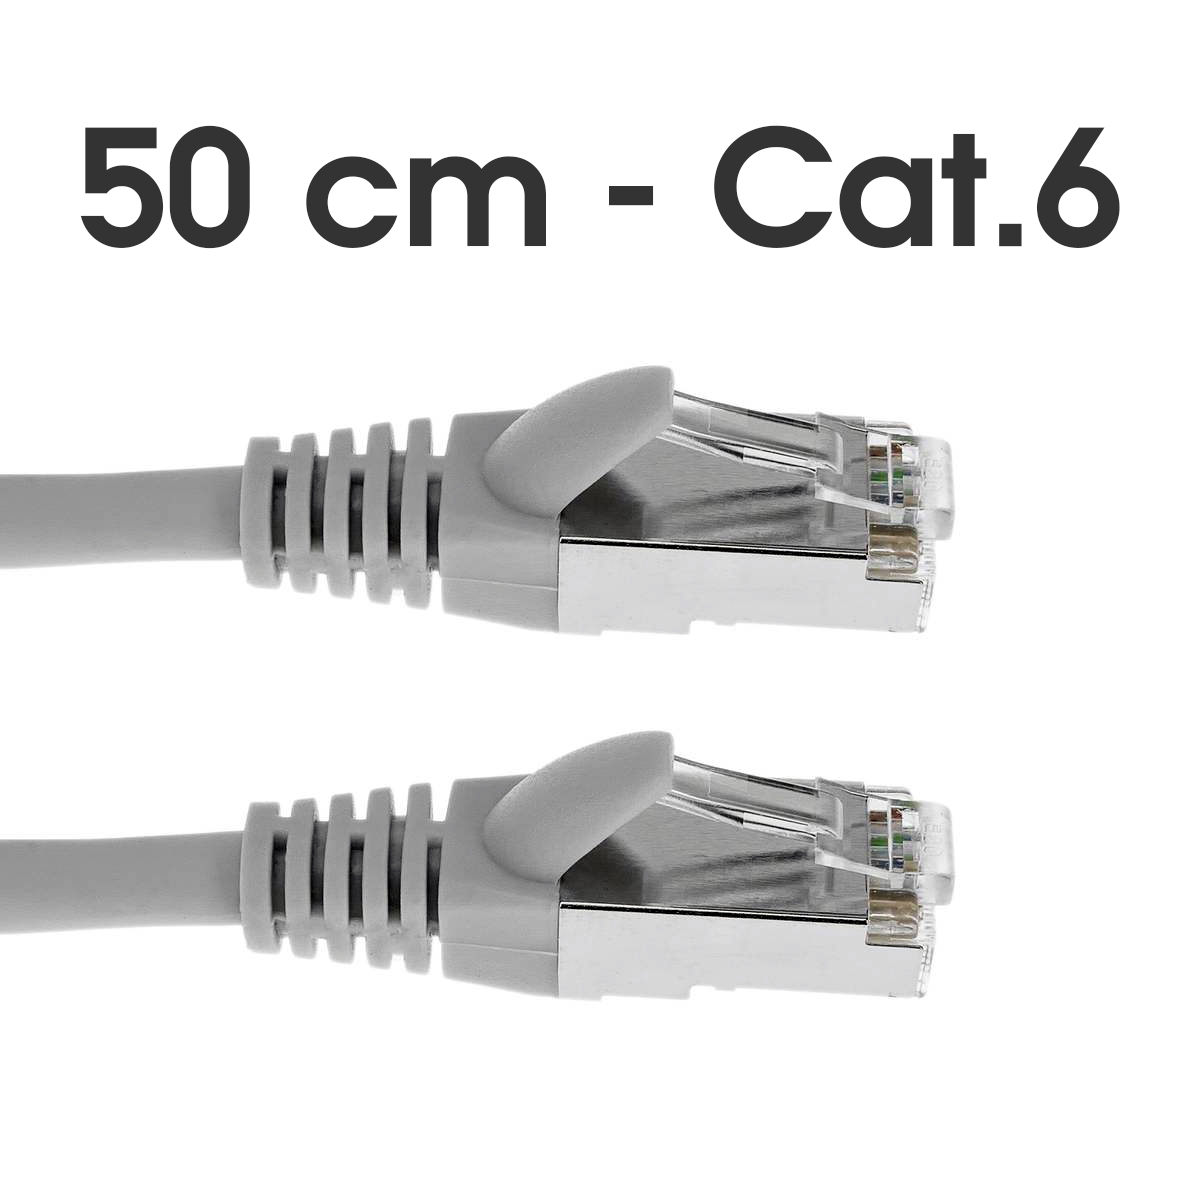 Câble Ethernet RJ45 - 50cm - Cat.6 - Gris - PILES 974